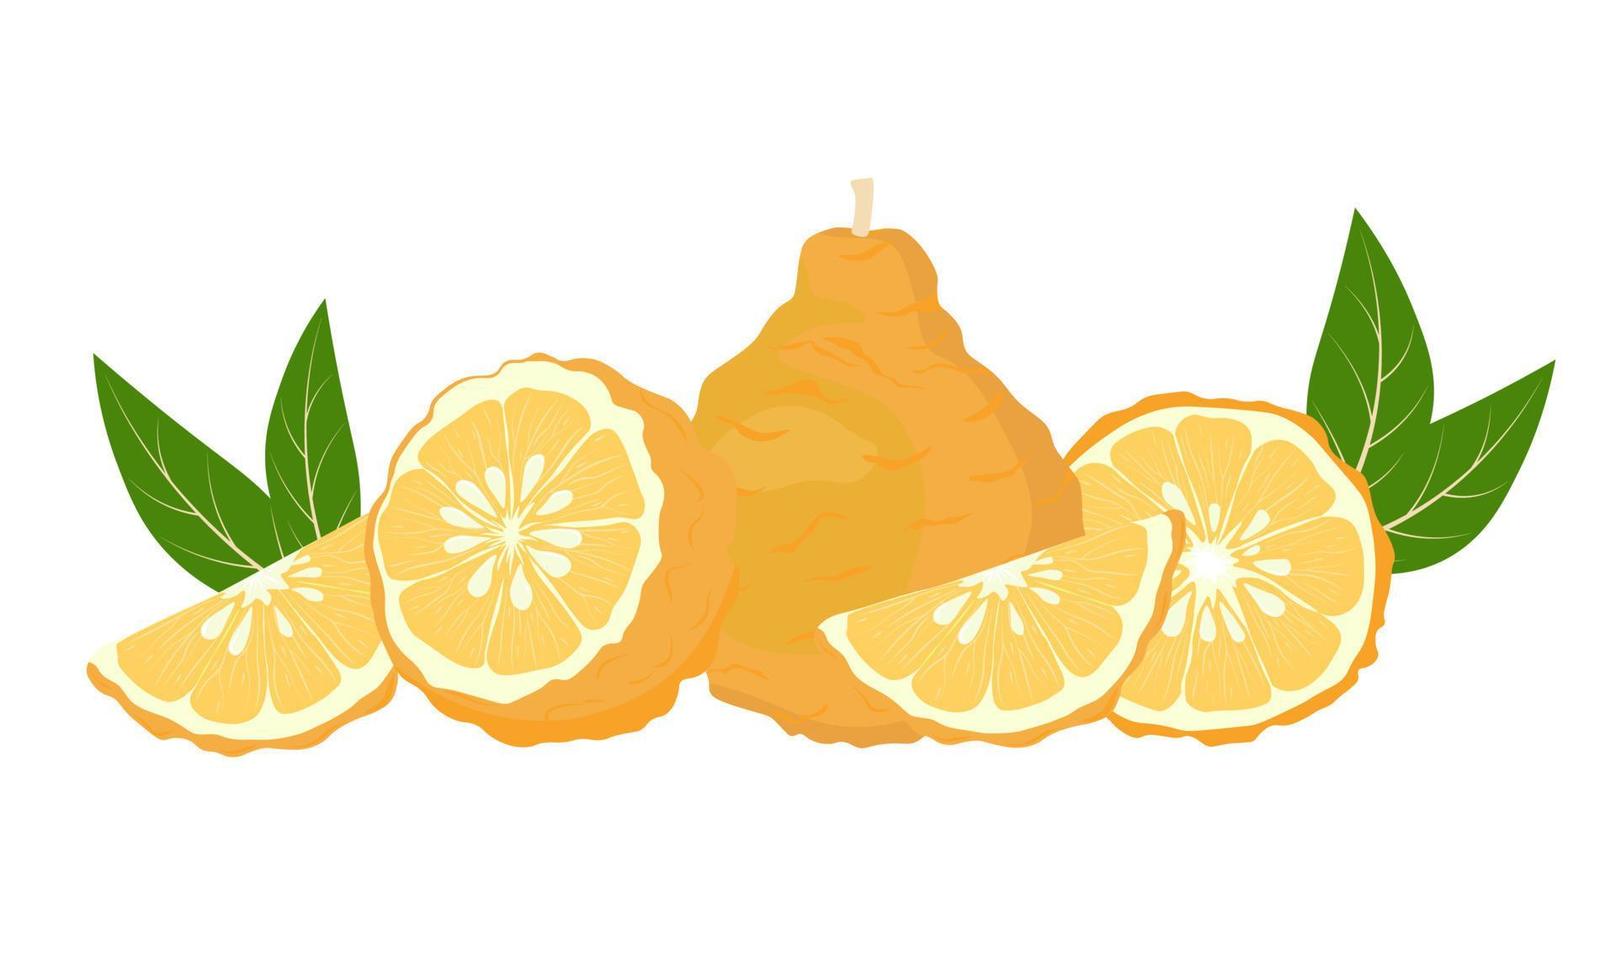 Yuzu-Vektorvorratillustration. Zitrone. gelbe saure Zitronatfrucht reif mit Blättern. Zitrone, Limette, Mandarine, Orange, Zitrusfrüchte und Aquarellgrüns. isoliert auf weißem Hintergrund. vektor